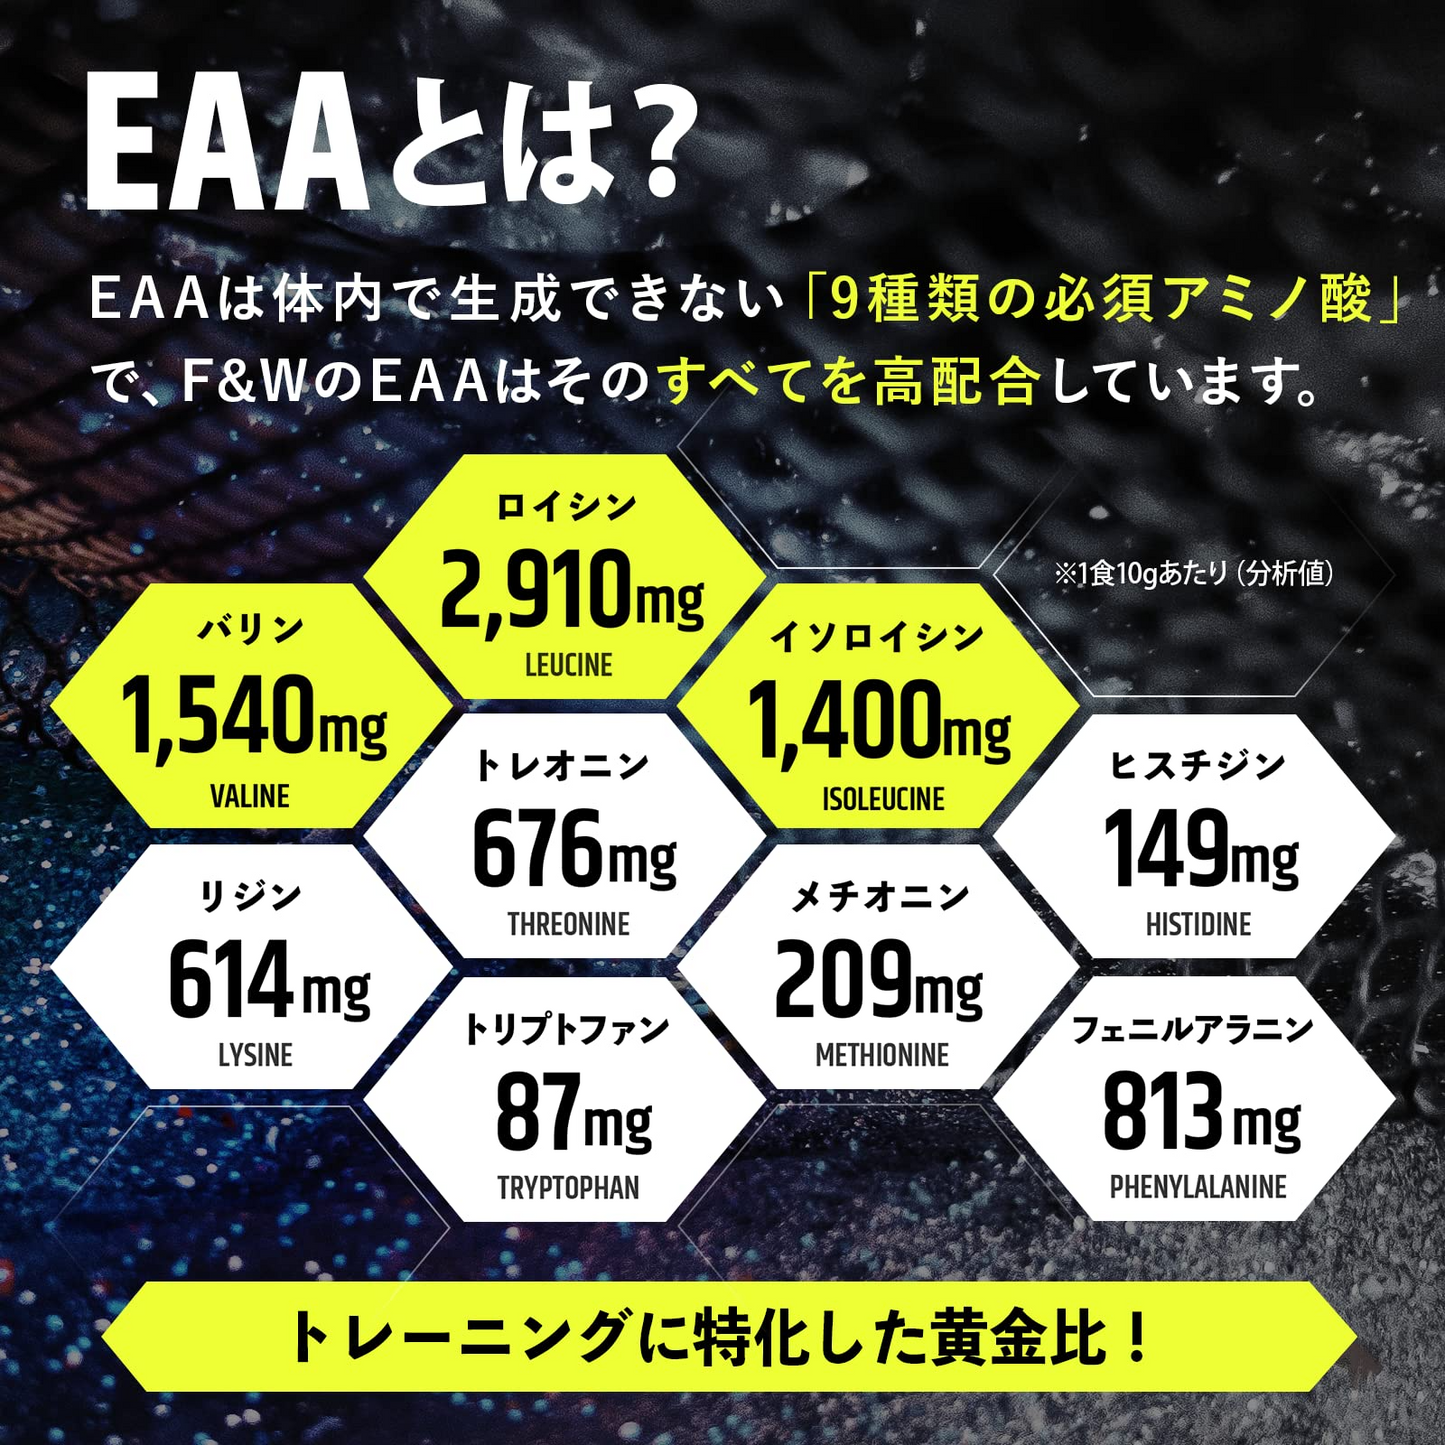 EAA エナジー風味 1kg×12個セット